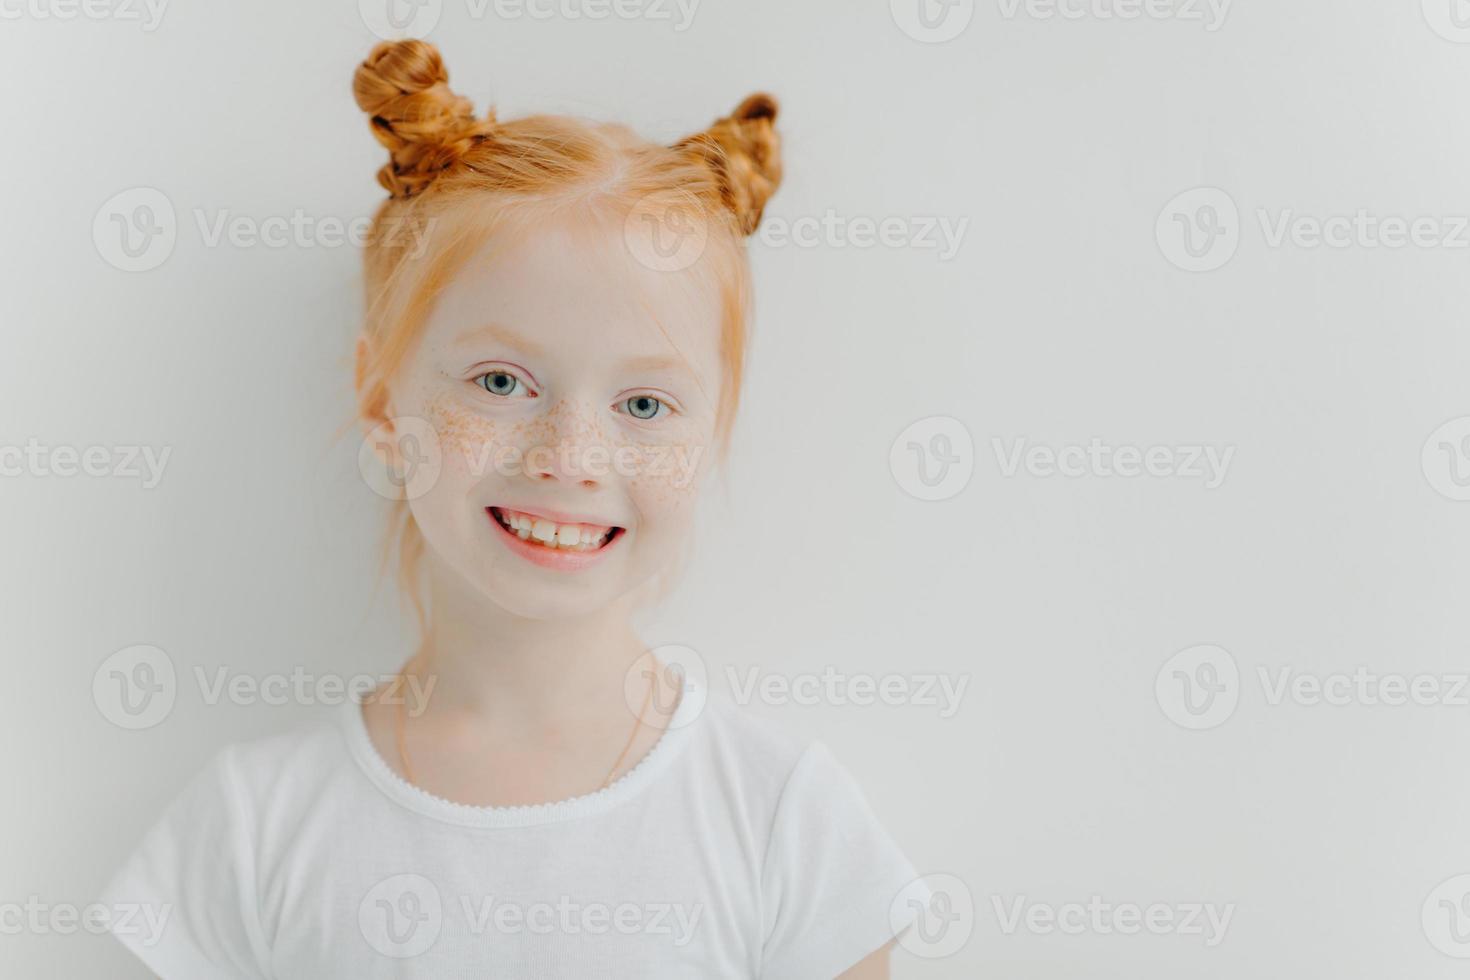 positief aantrekkelijk meisje met dubbele gemberbroodjes, sproeten op het gezicht, brede glimlach, gekleed in een casual t-shirt, staat tegen een witte achtergrond, lege ruimte voor uw advertentie. kinderen concept foto